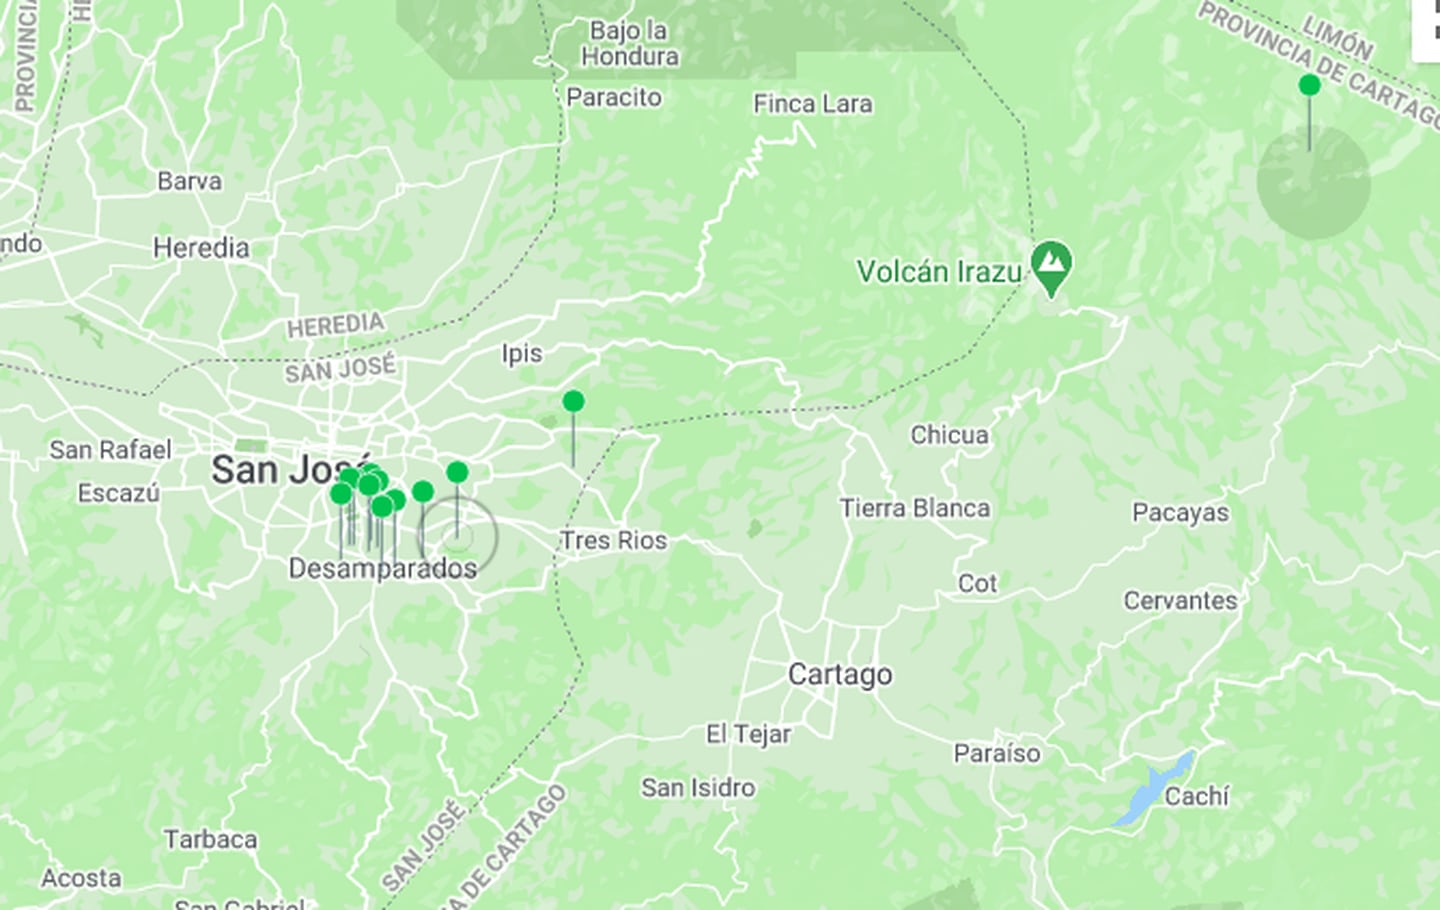 Dos de los 14 temblores tuvieron su epicentro en el cementerio de Desamparados, según la RSN. Imagen: RSN.